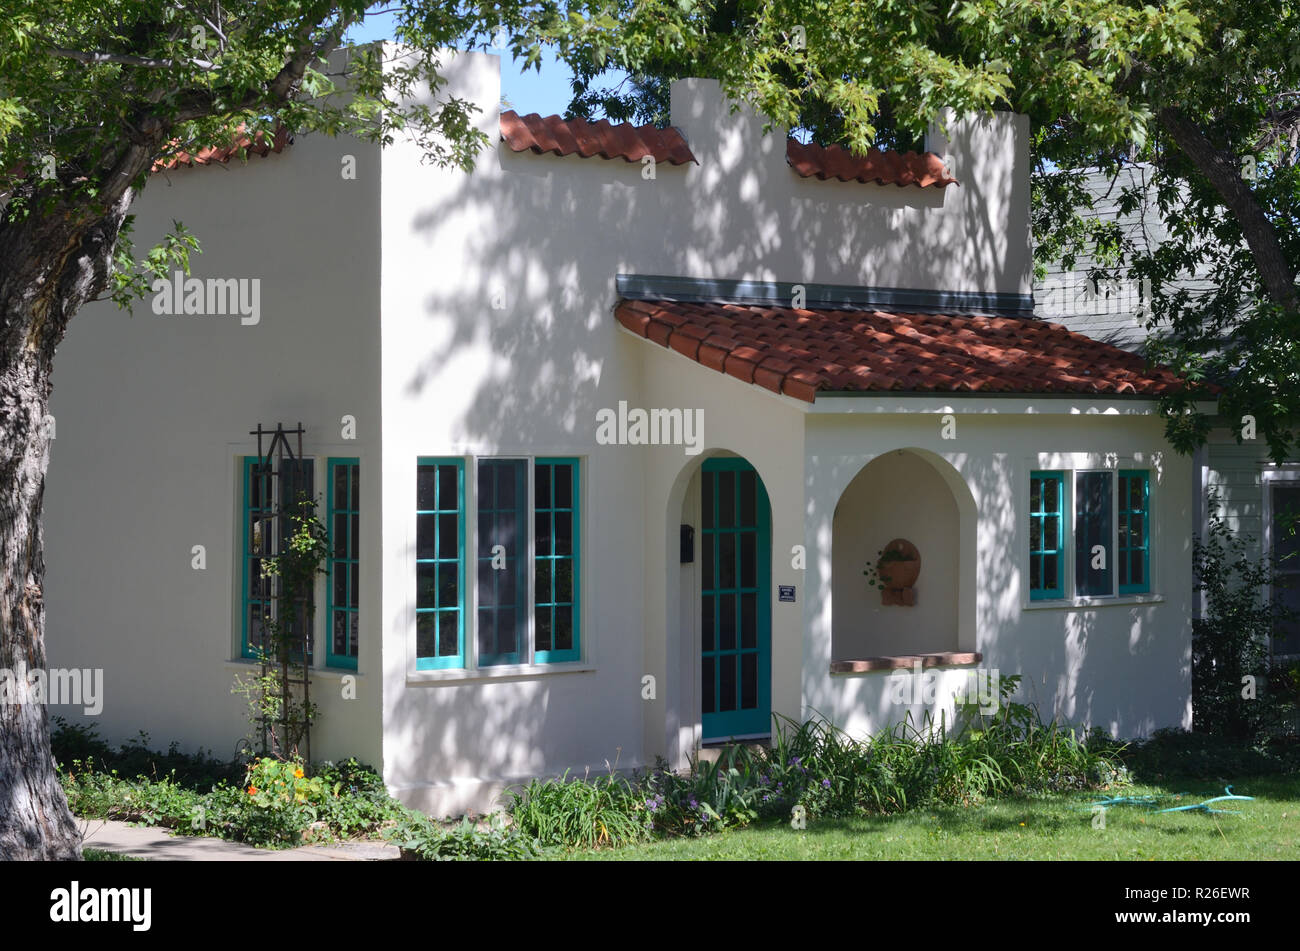 Casa estilo nuevo mexico fotografías e imágenes de alta resolución - Alamy